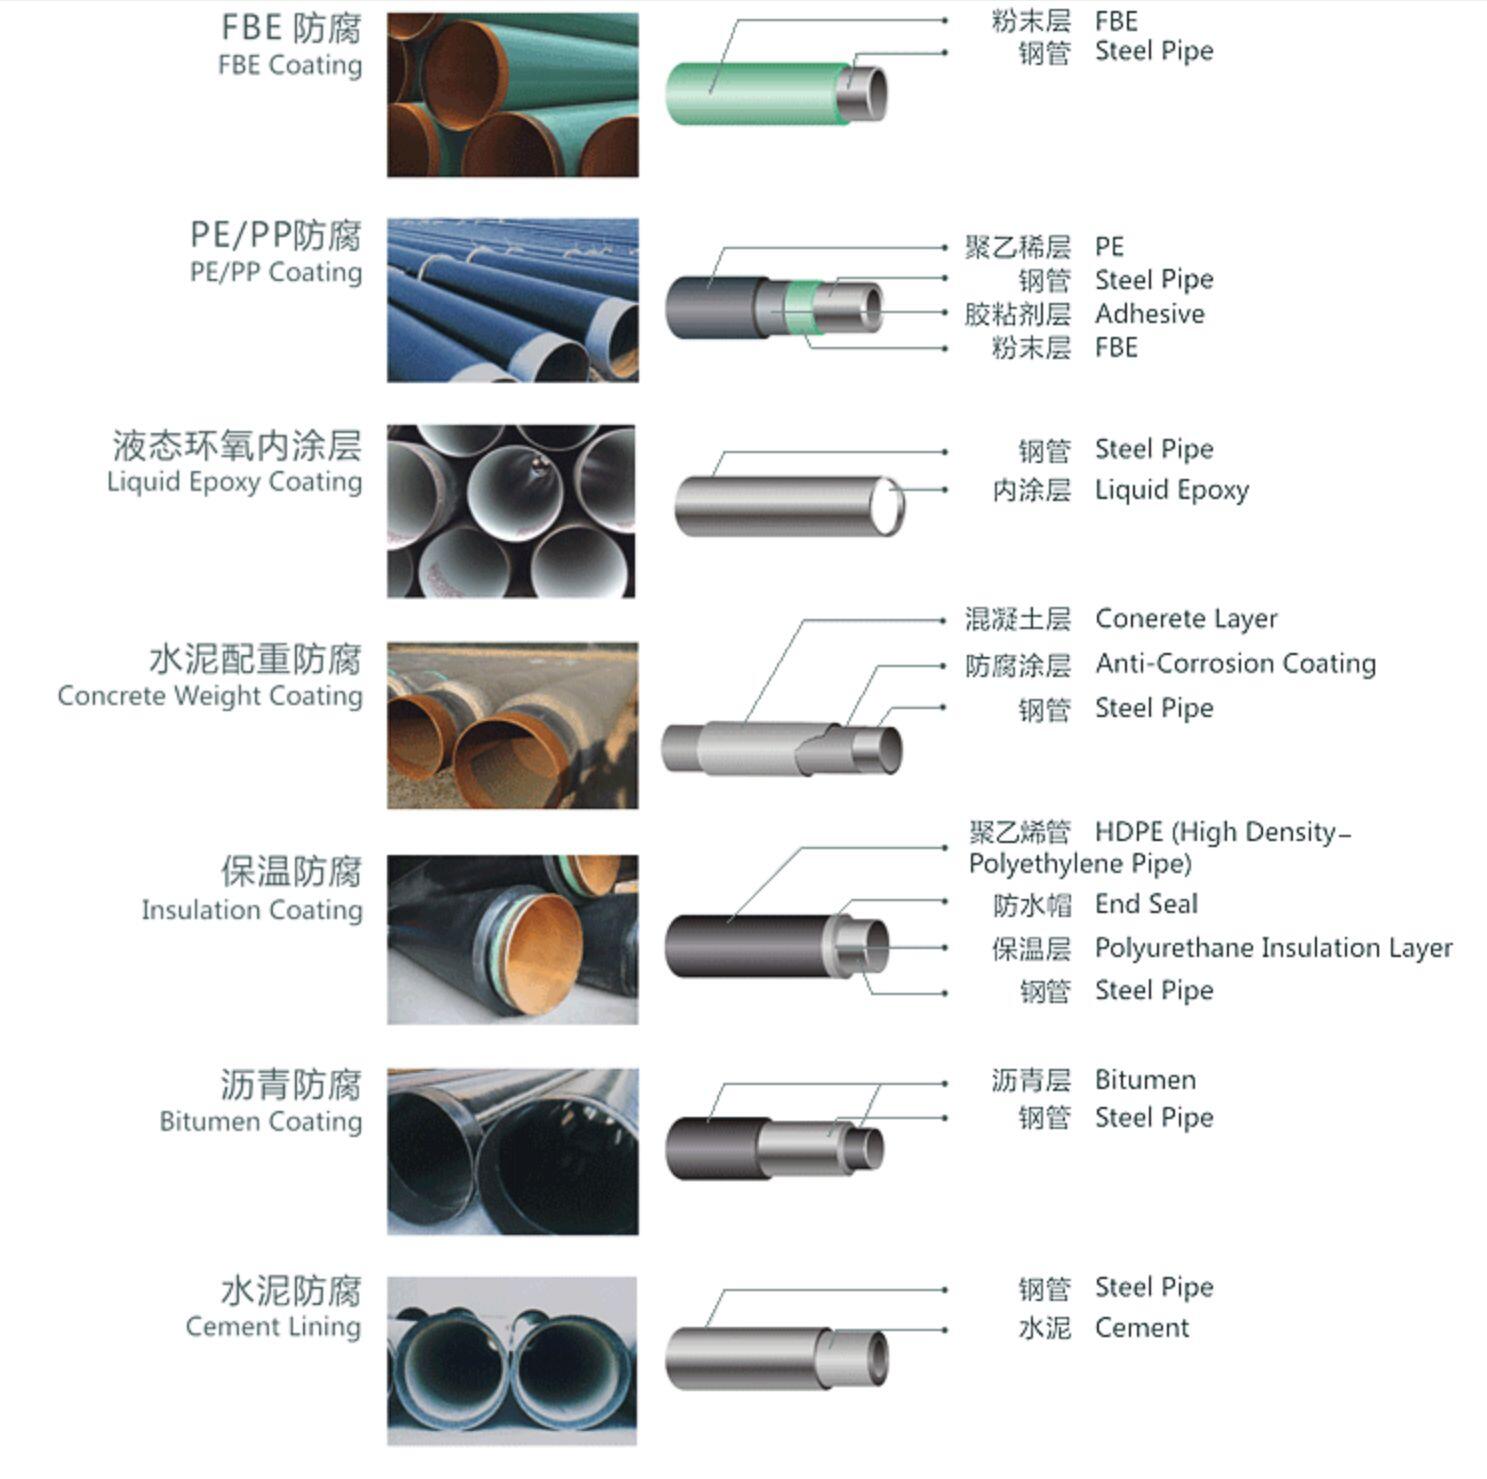 steel pipe coating